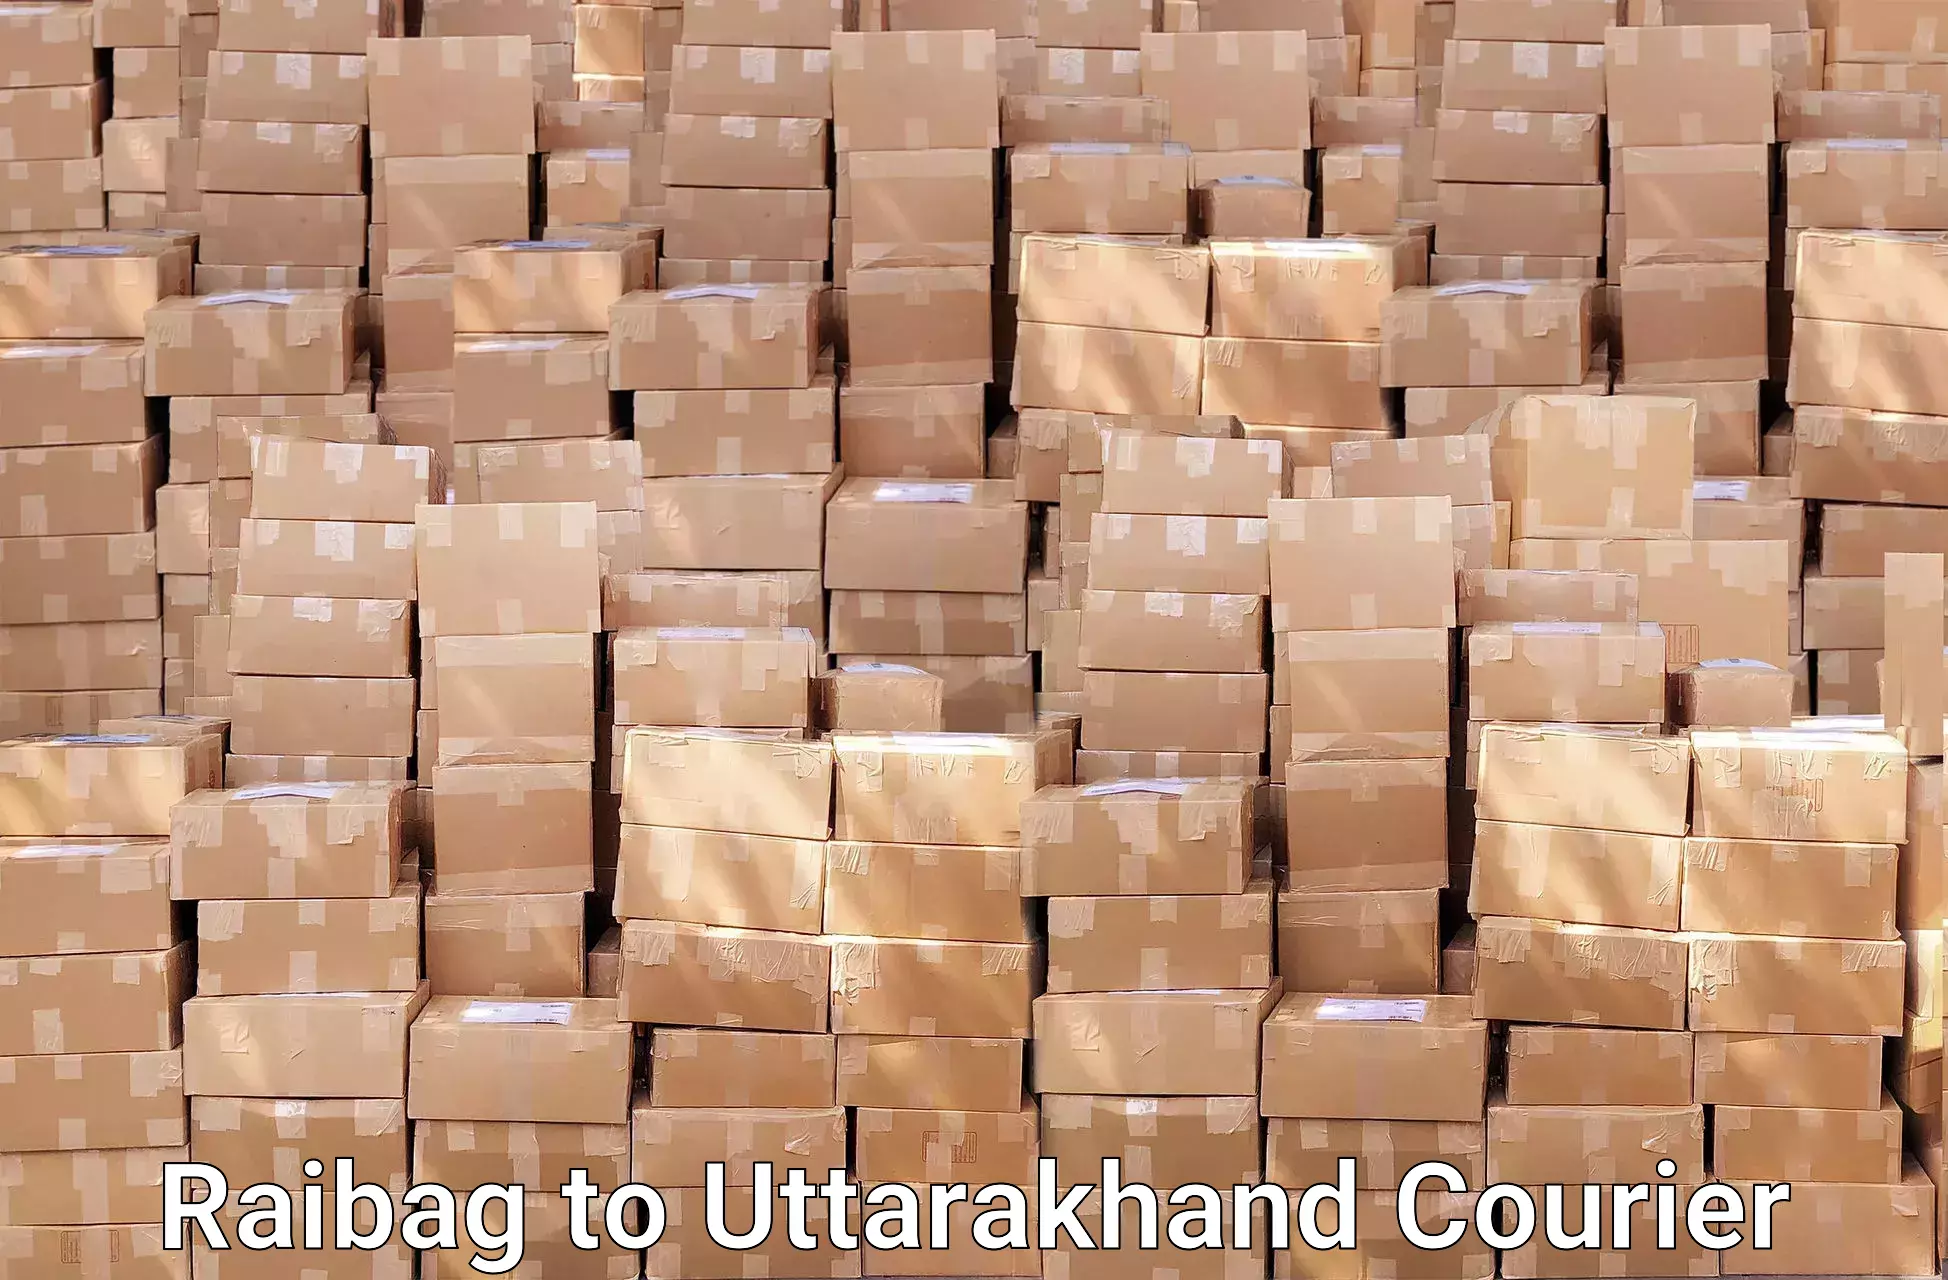 Moving and packing experts Raibag to Uttarakhand